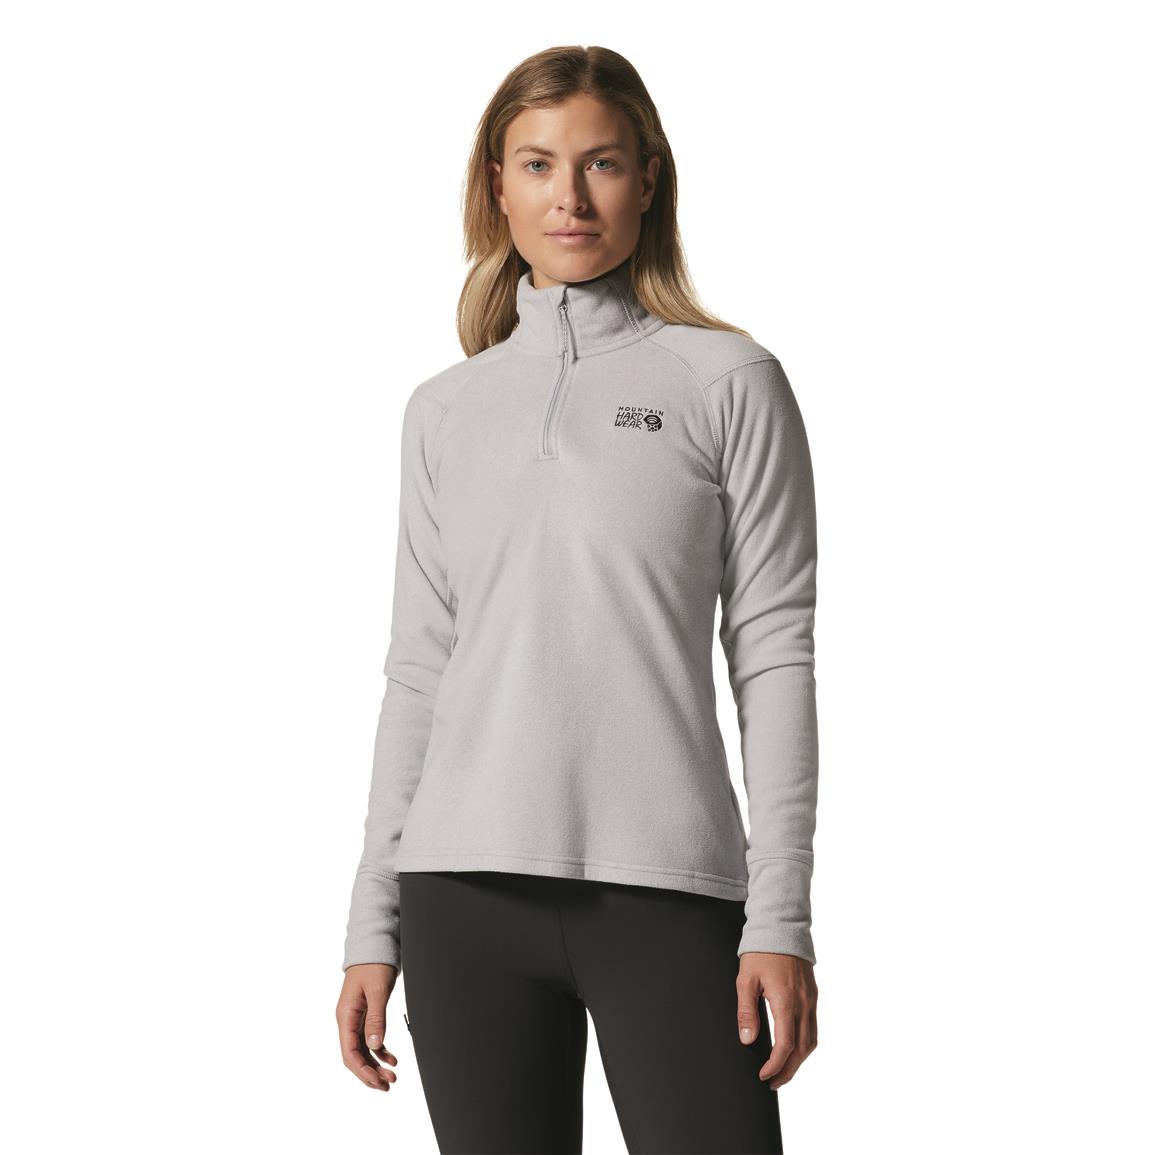 Mountain Hardwear Women's Microchill 2.0 Zip Shirt, Glacial Heather